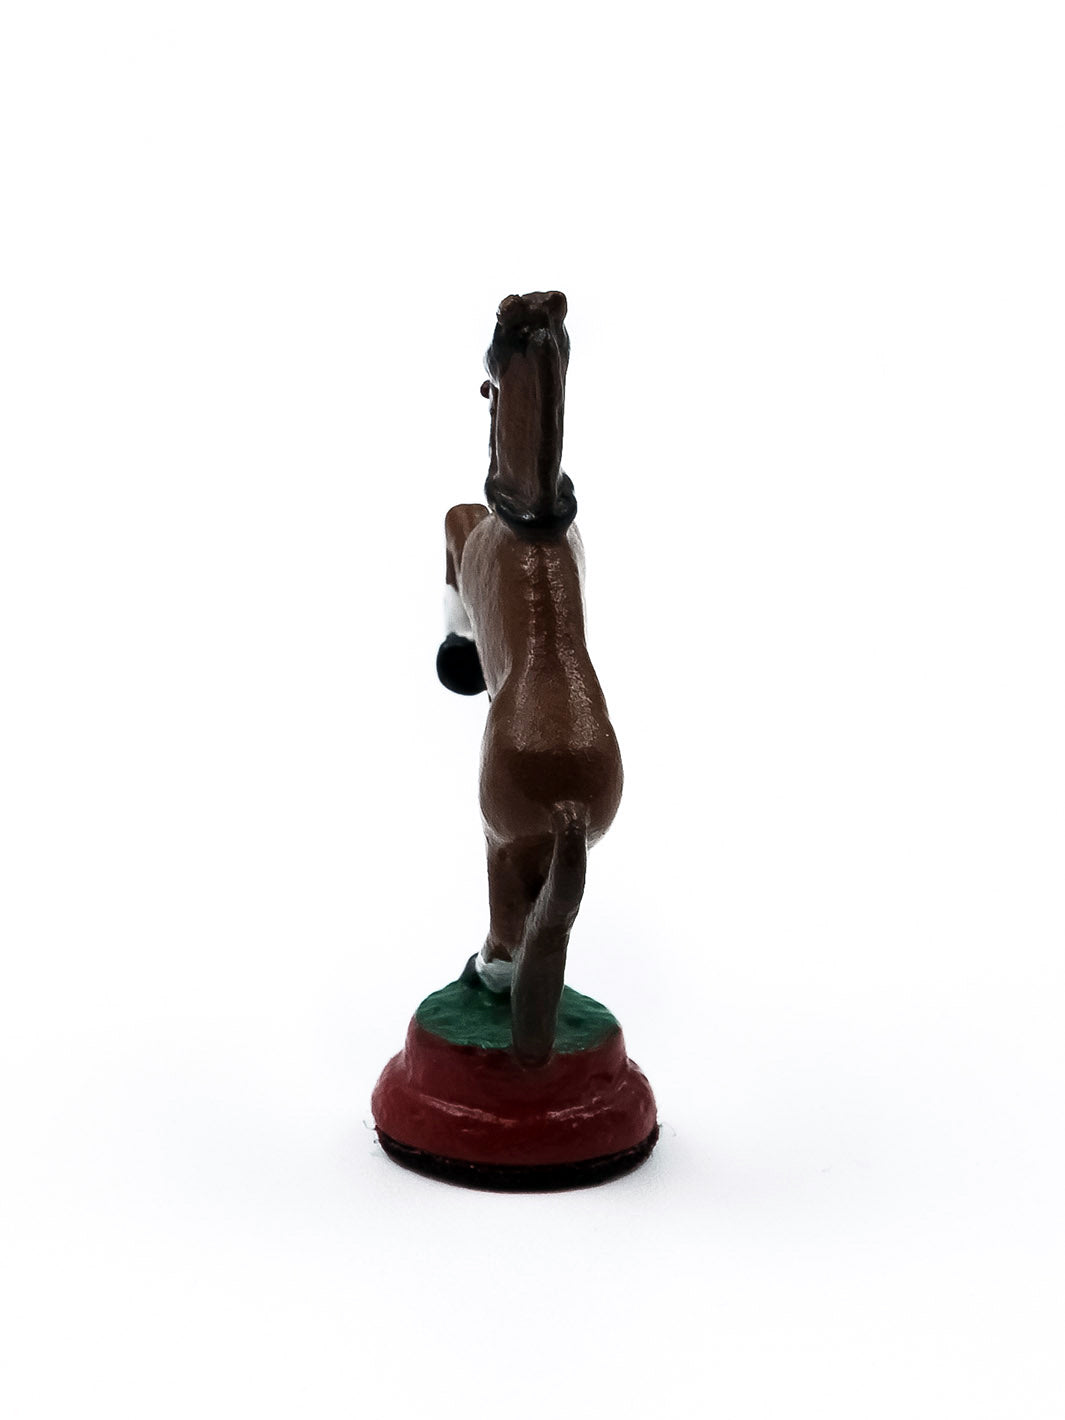 Cavalier cheval sur ses deux pattes arrieres avec base rouge vue de derriere